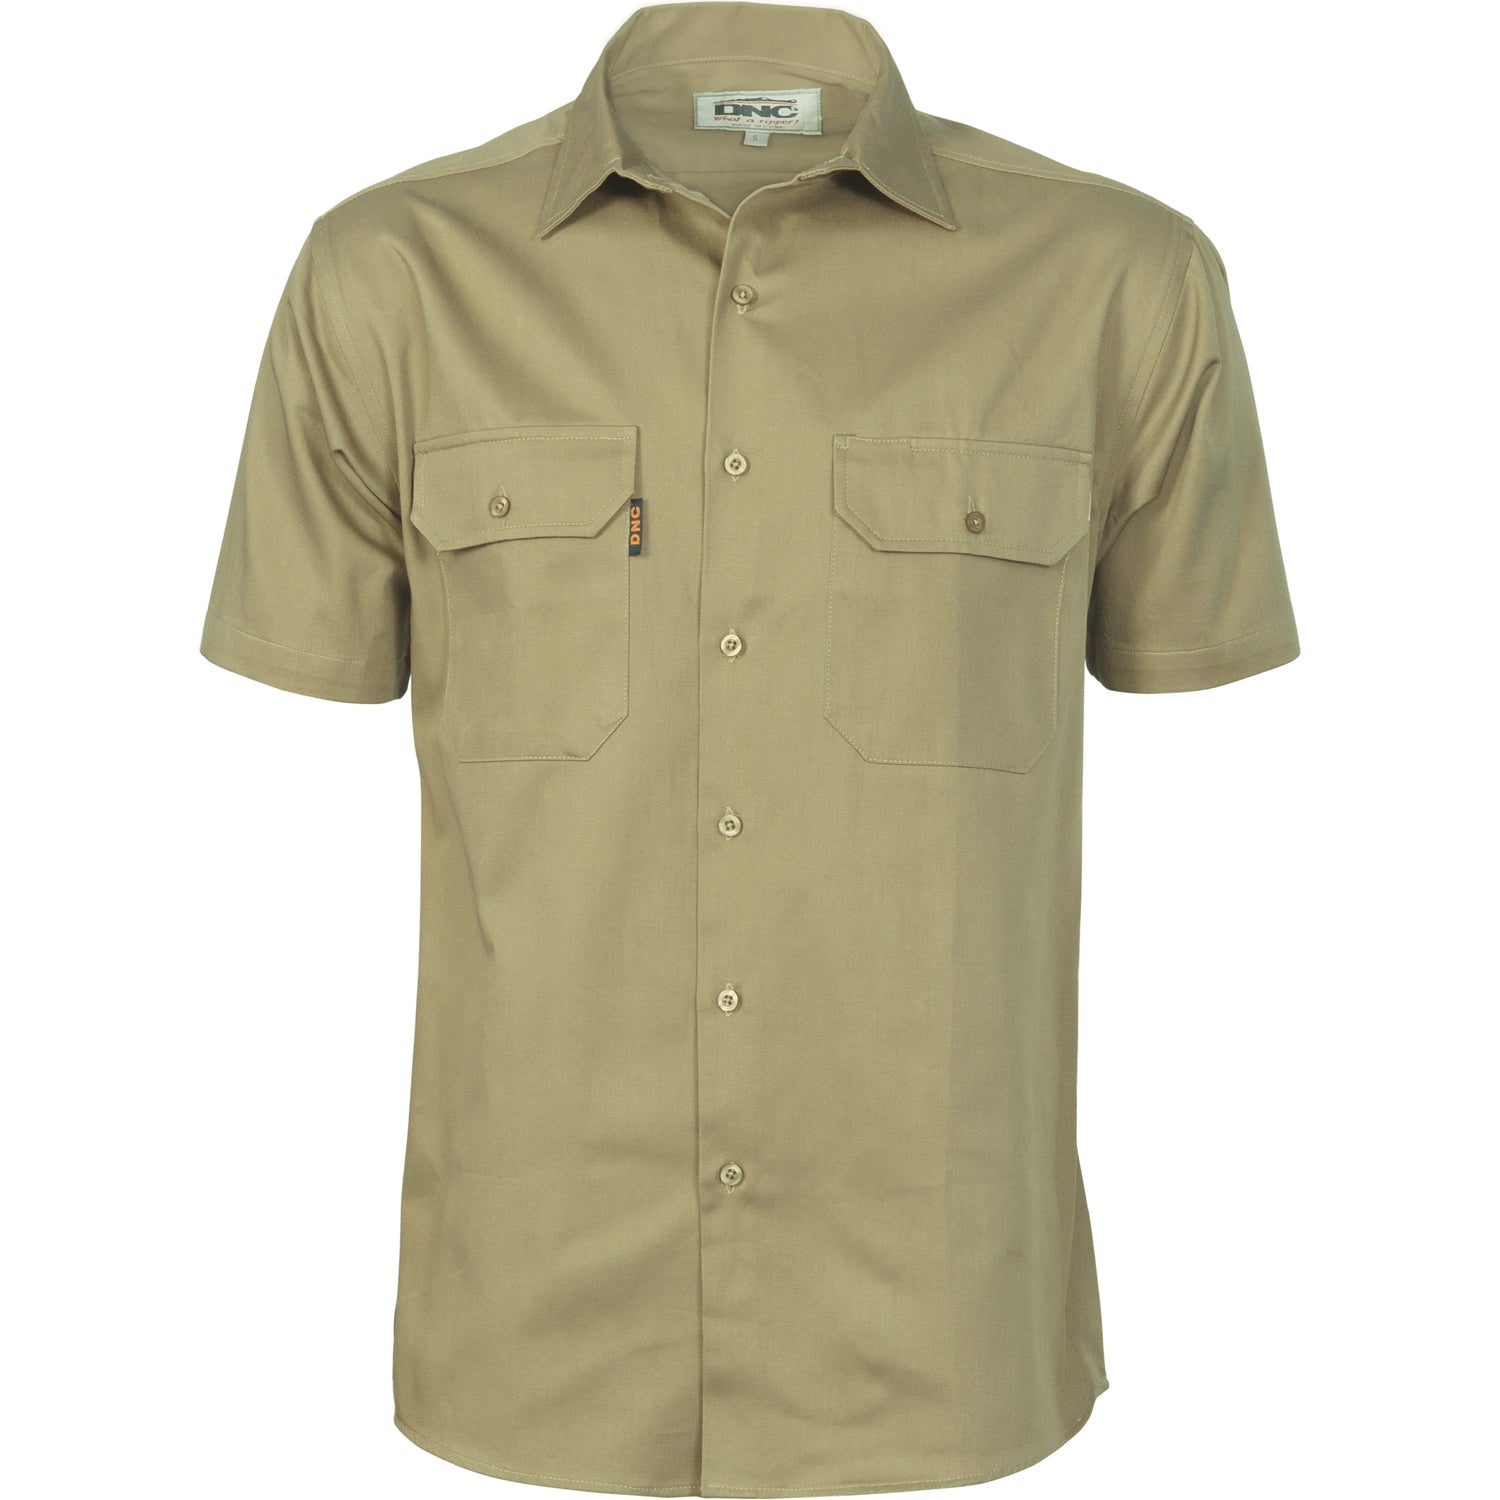 Dnc 3201 Cotton Drill Work Shirt - Short Sleeve